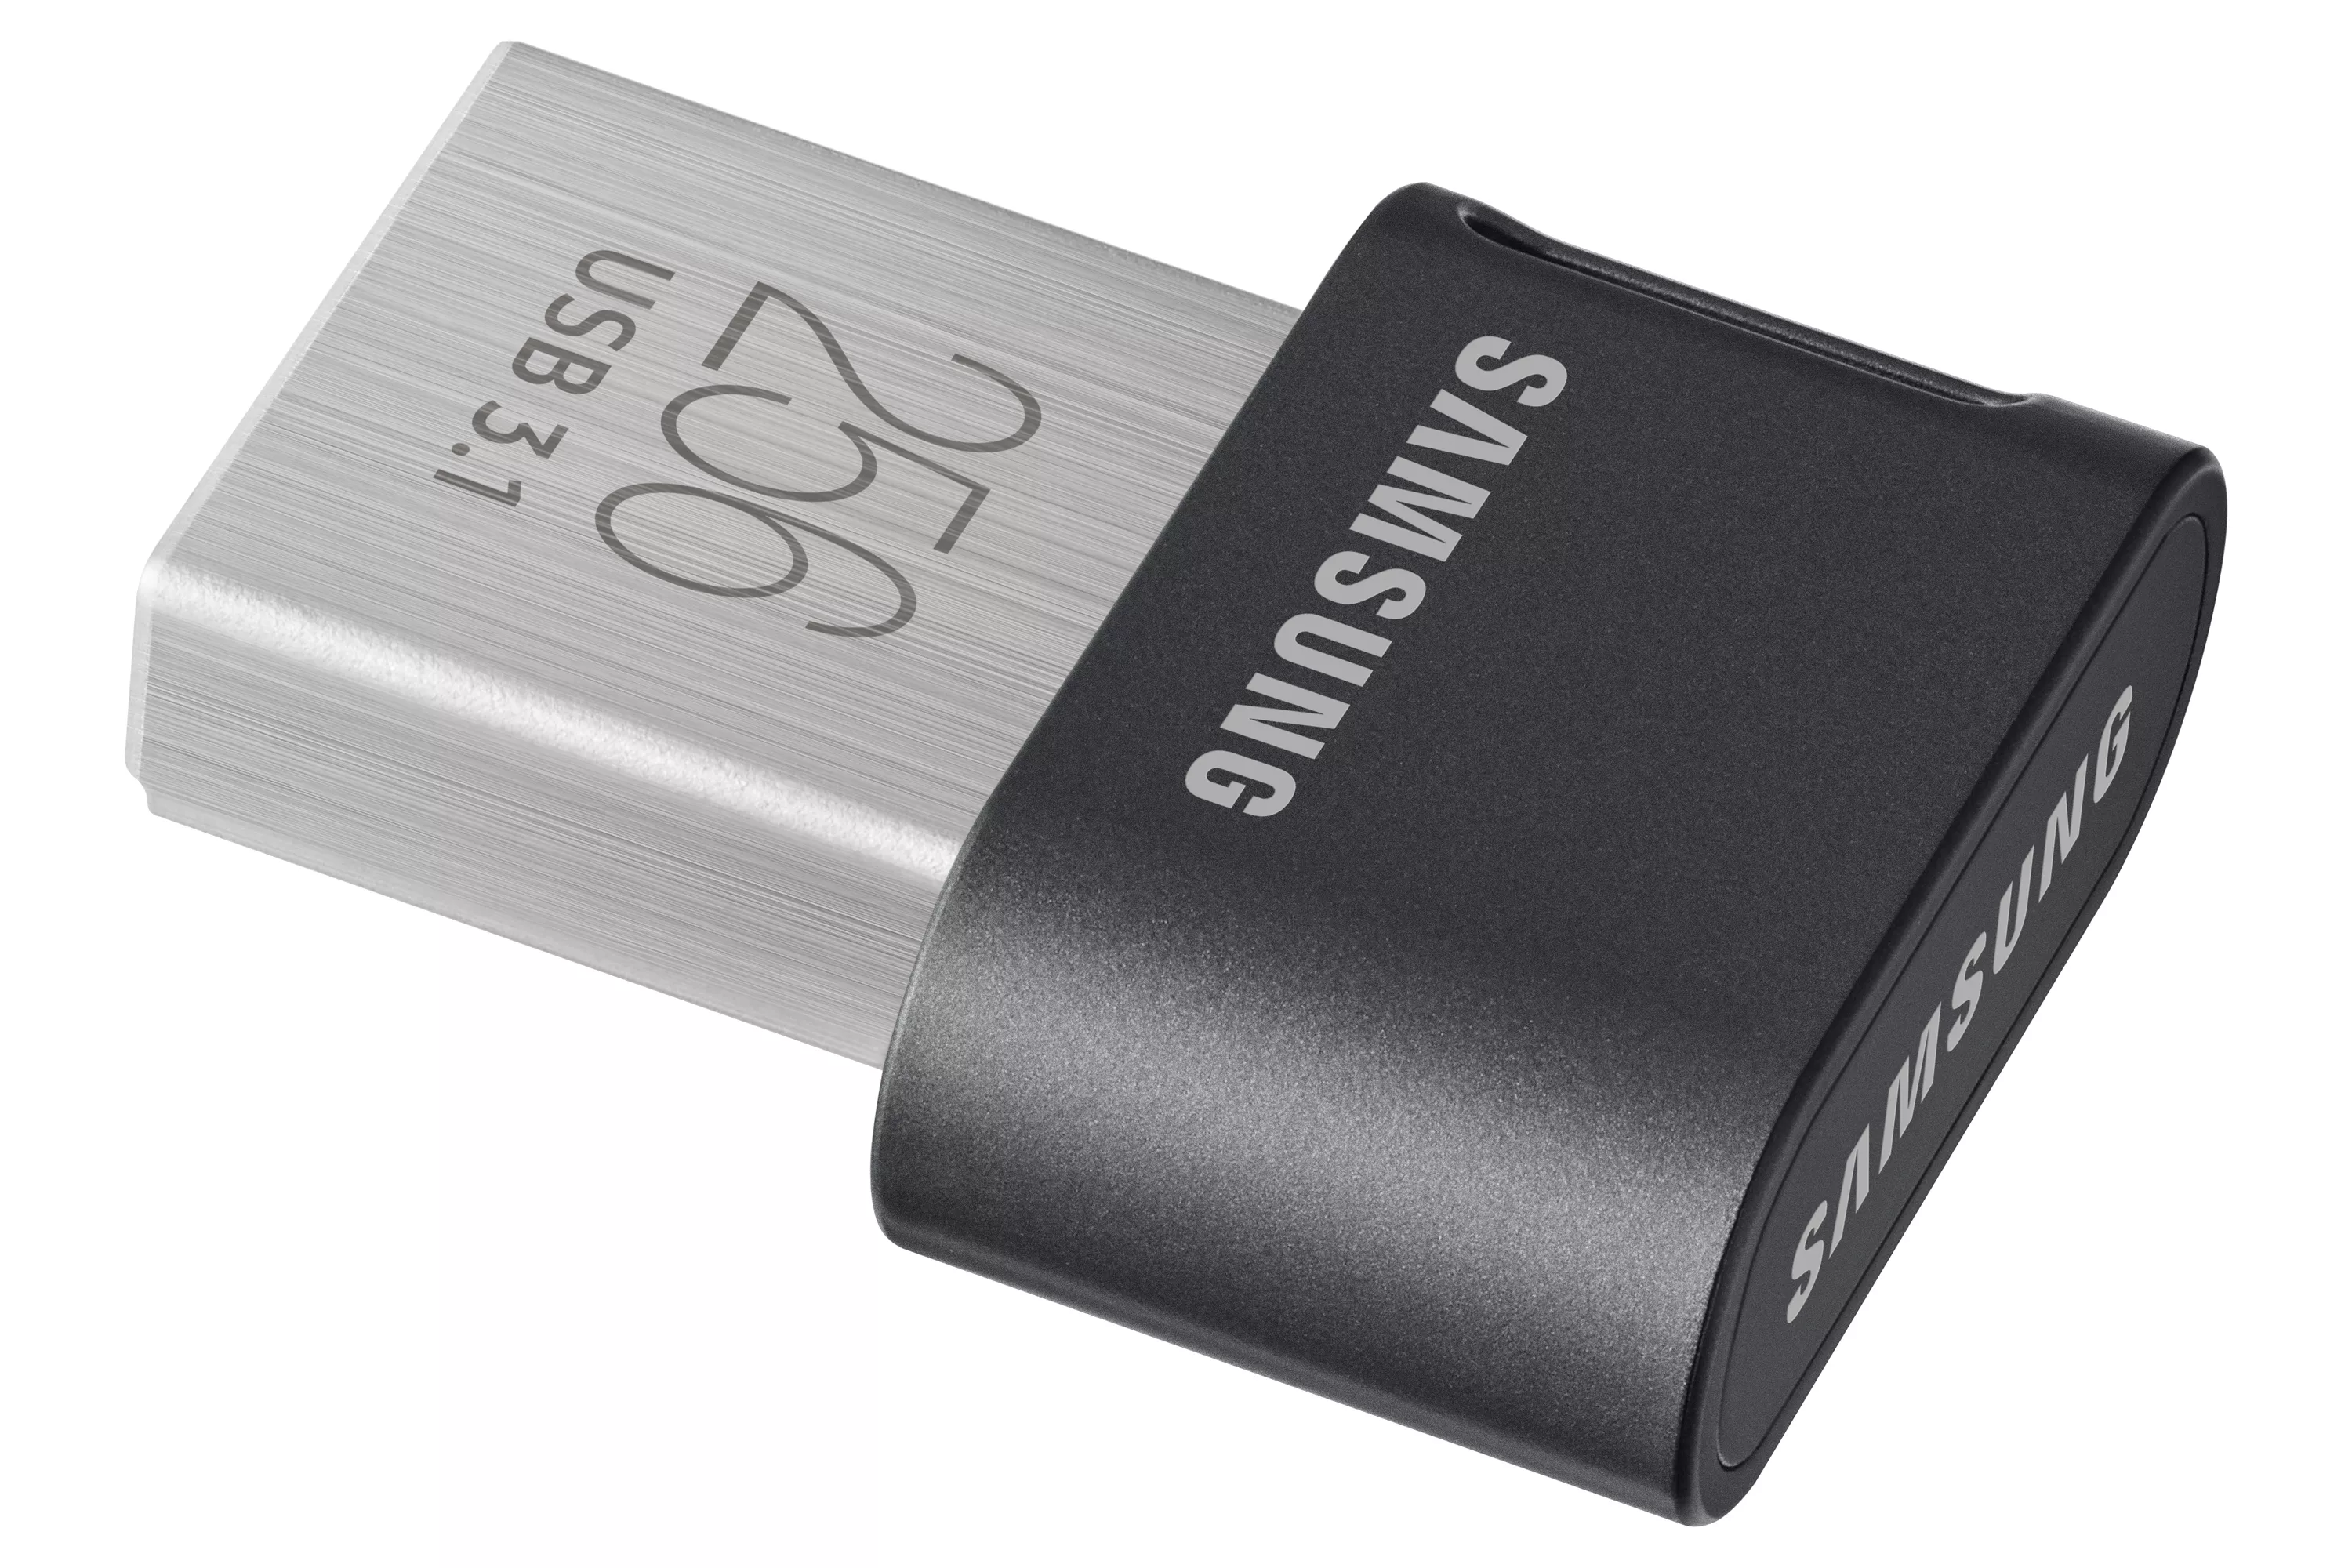 Achat SAMSUNG FIT PLUS 256Go USB 3.1 sur hello RSE - visuel 5